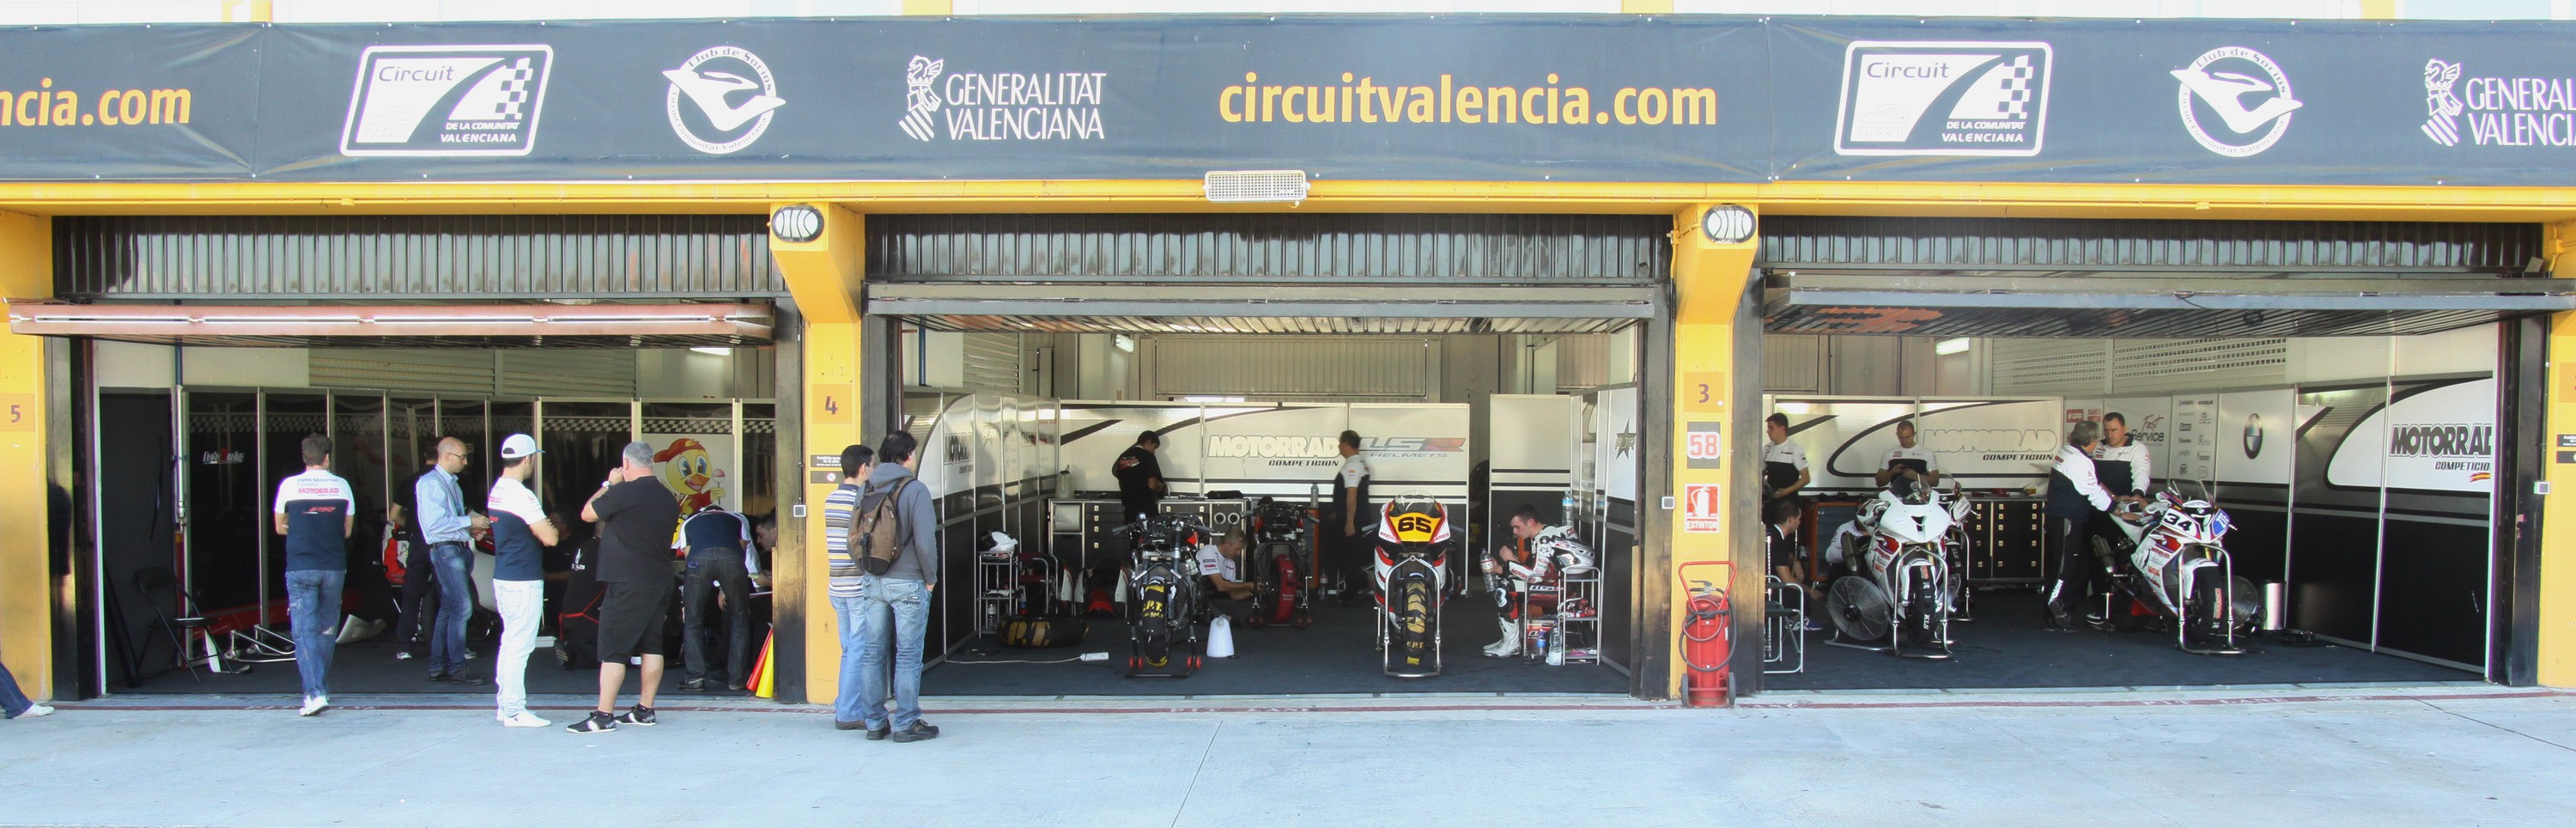 El Team Motorrad a por todo en el CEV Valencia